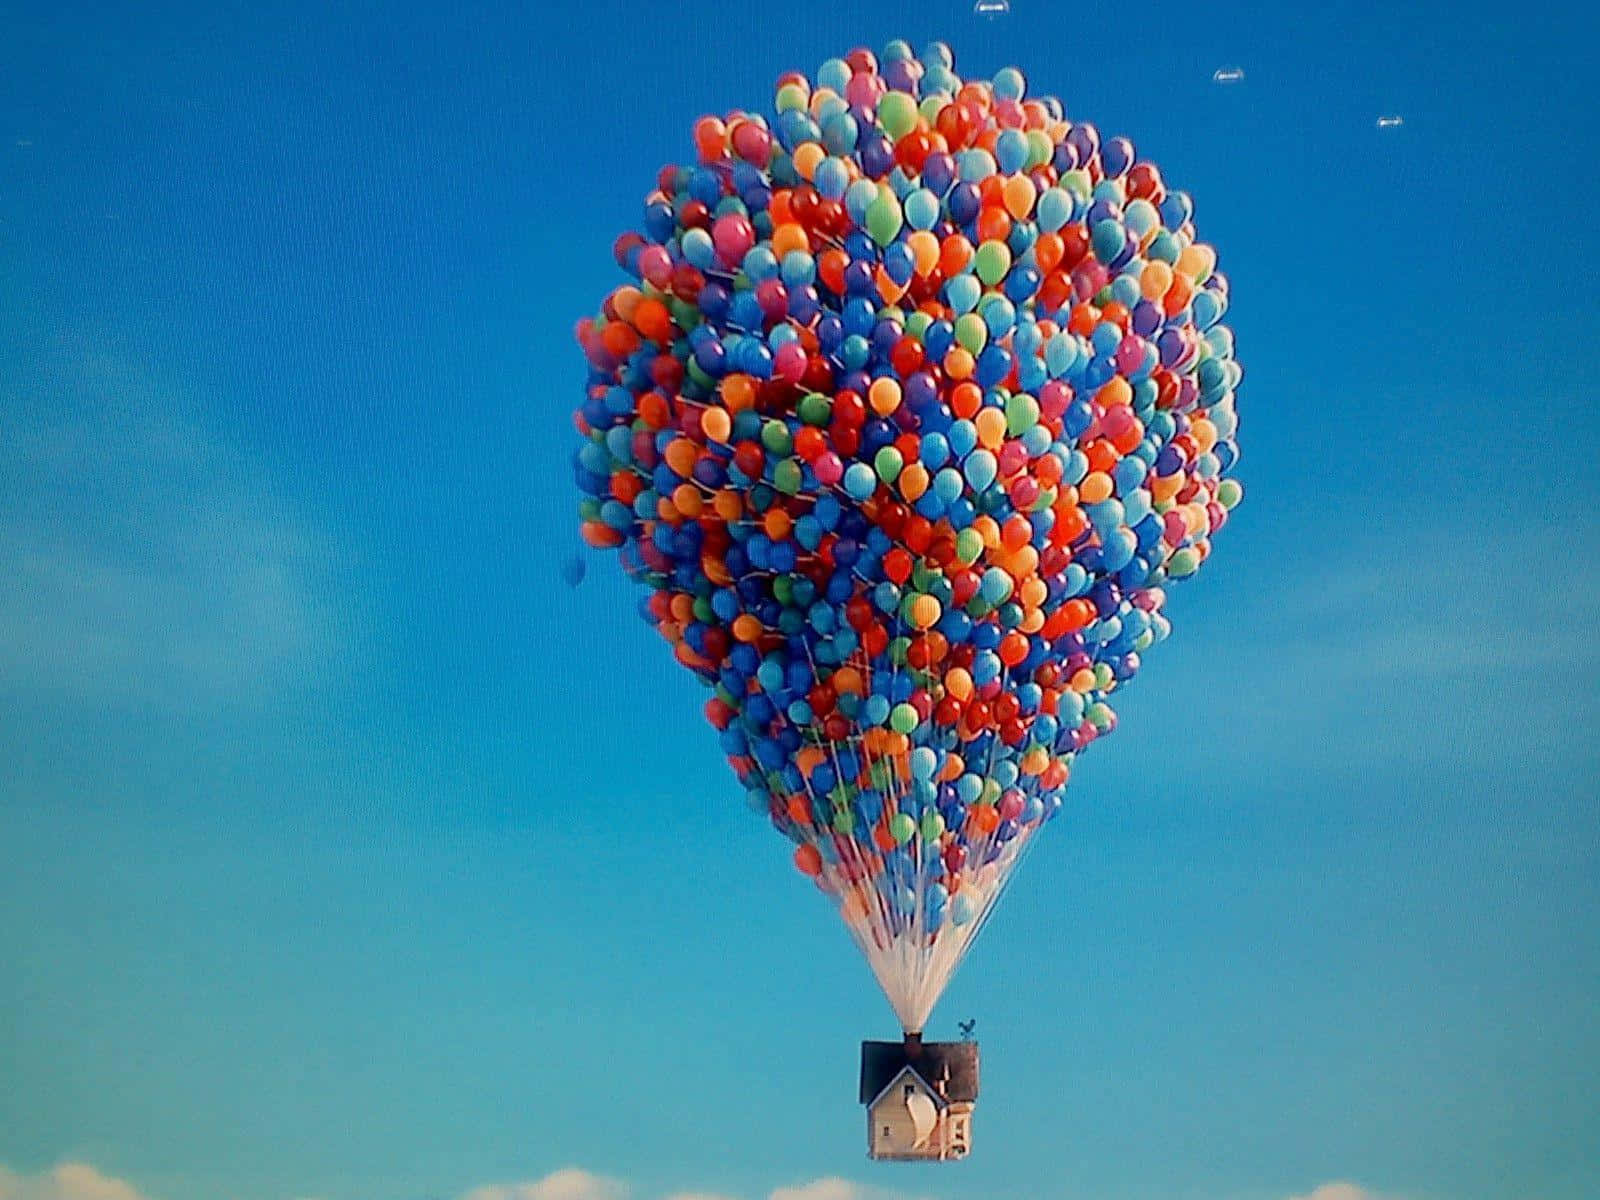 Farverigevarmluftballoner Dukker Op Og Skaber Et Kalejdoskopisk Effekt På Himlen.